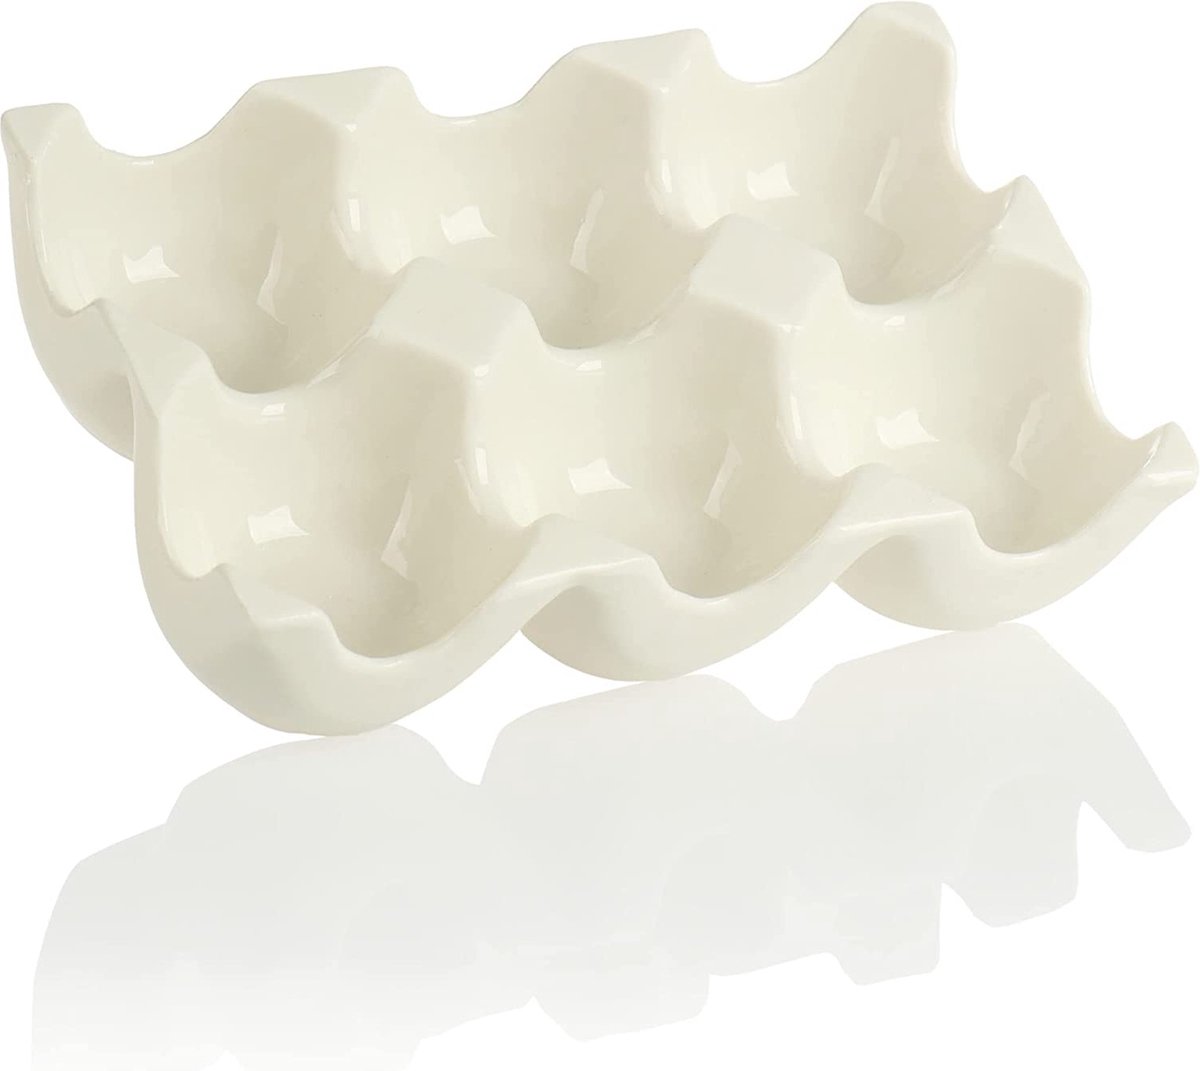 keramische eierhouders - eierhouder voor in de koelkast - eiermand voor 6 eieren - keukenaccessoires (02 stuks - wit)